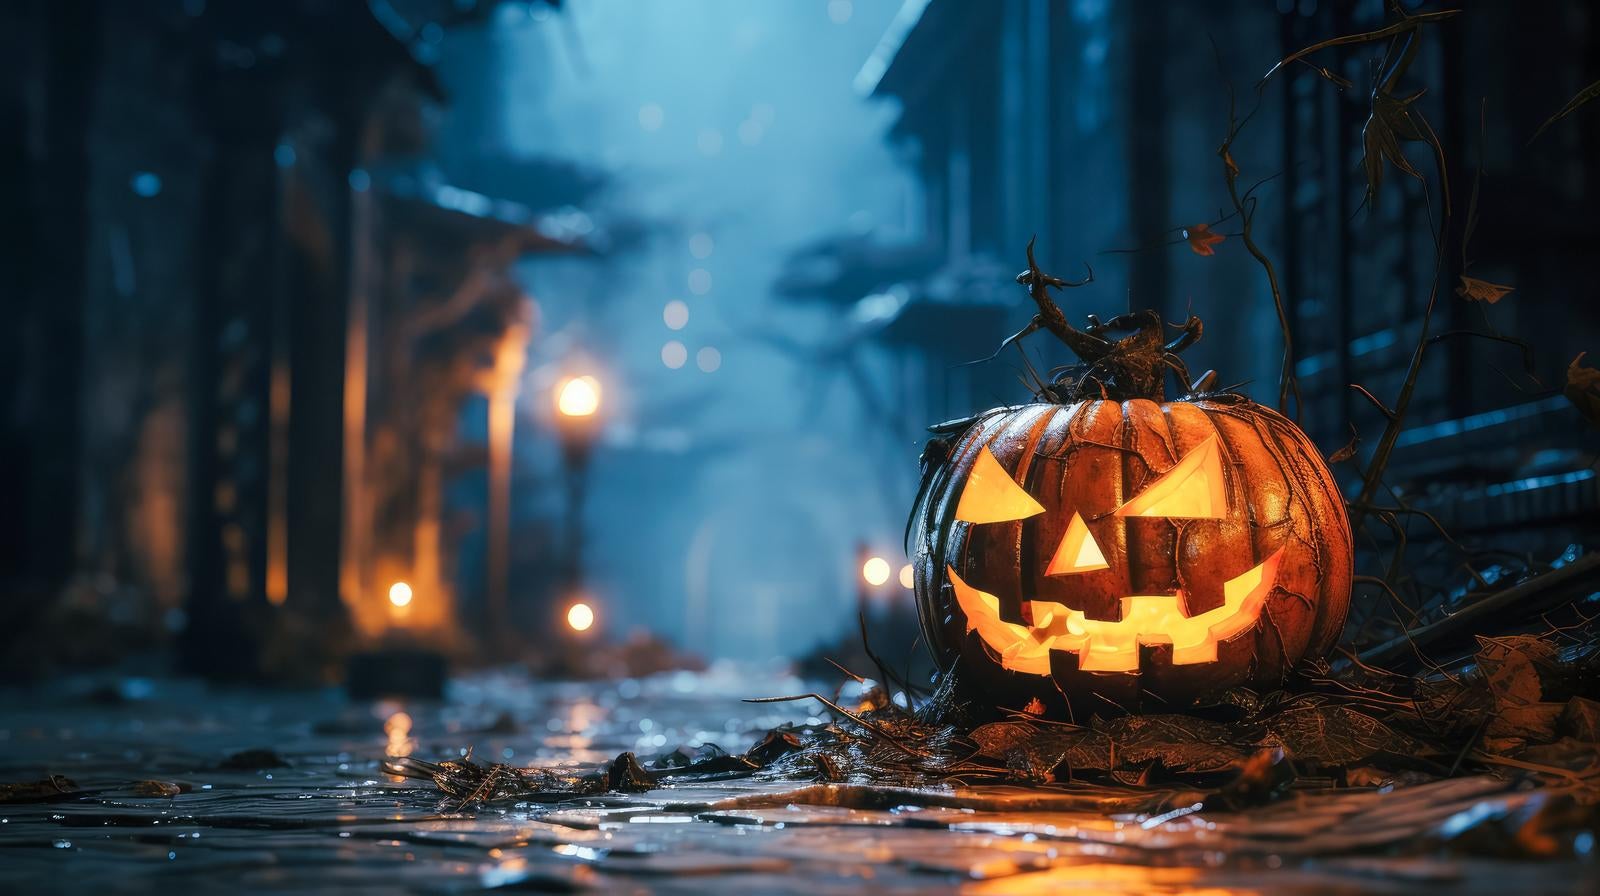 「お化け屋敷の秘密、ハロウィンの夜道を歩く」の写真